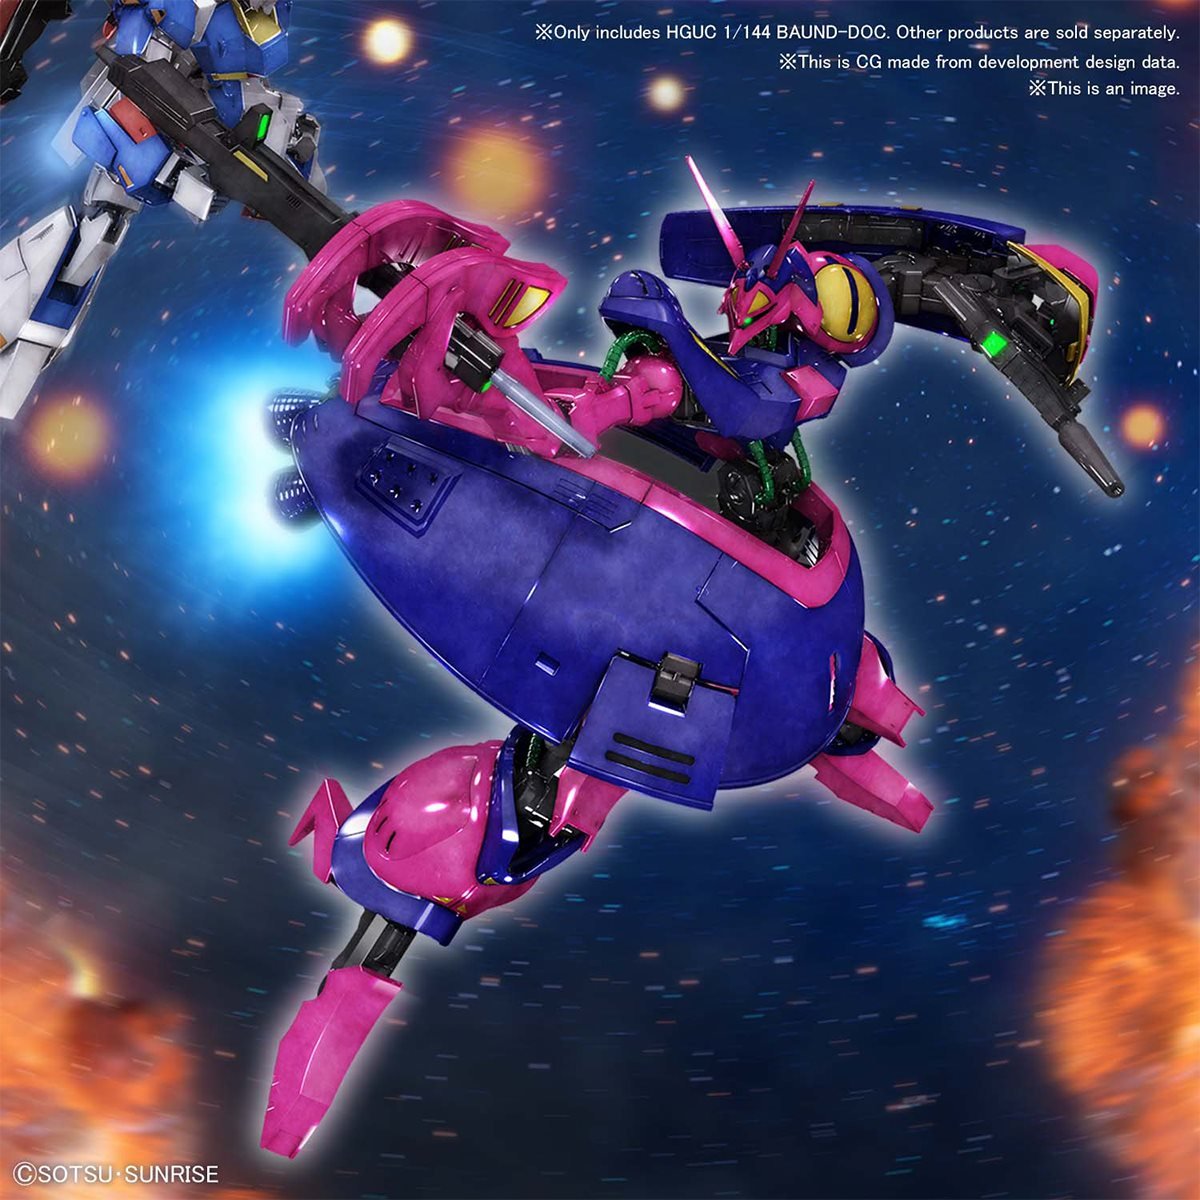 HGUC #235 Zeta Gundam NRX-055 Baund-Doc